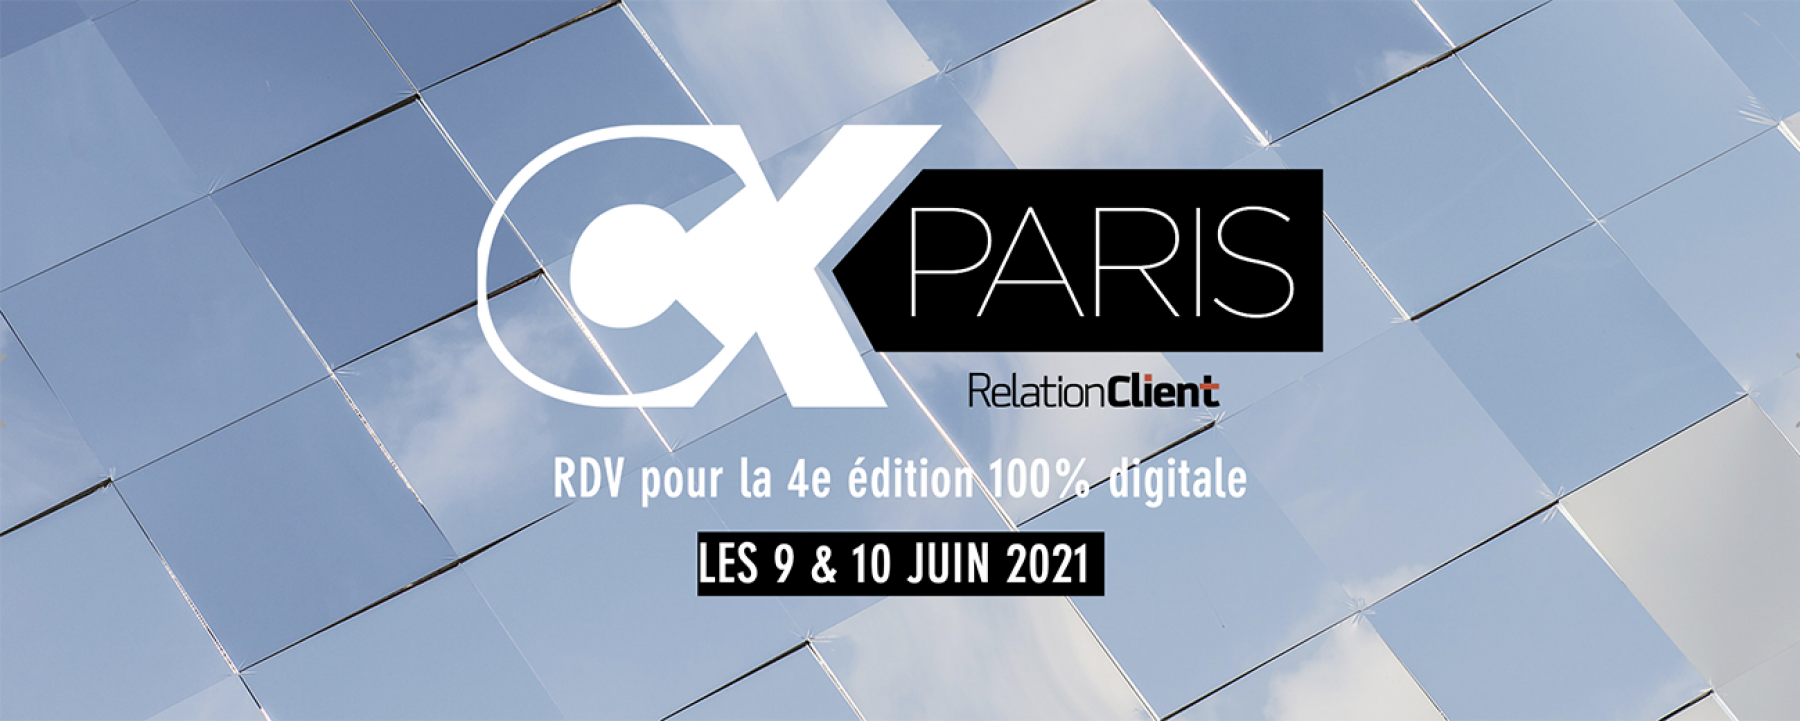 CX Paris 2021, un événement organisé par NetMedia Group les 9 et 10 juin 2021